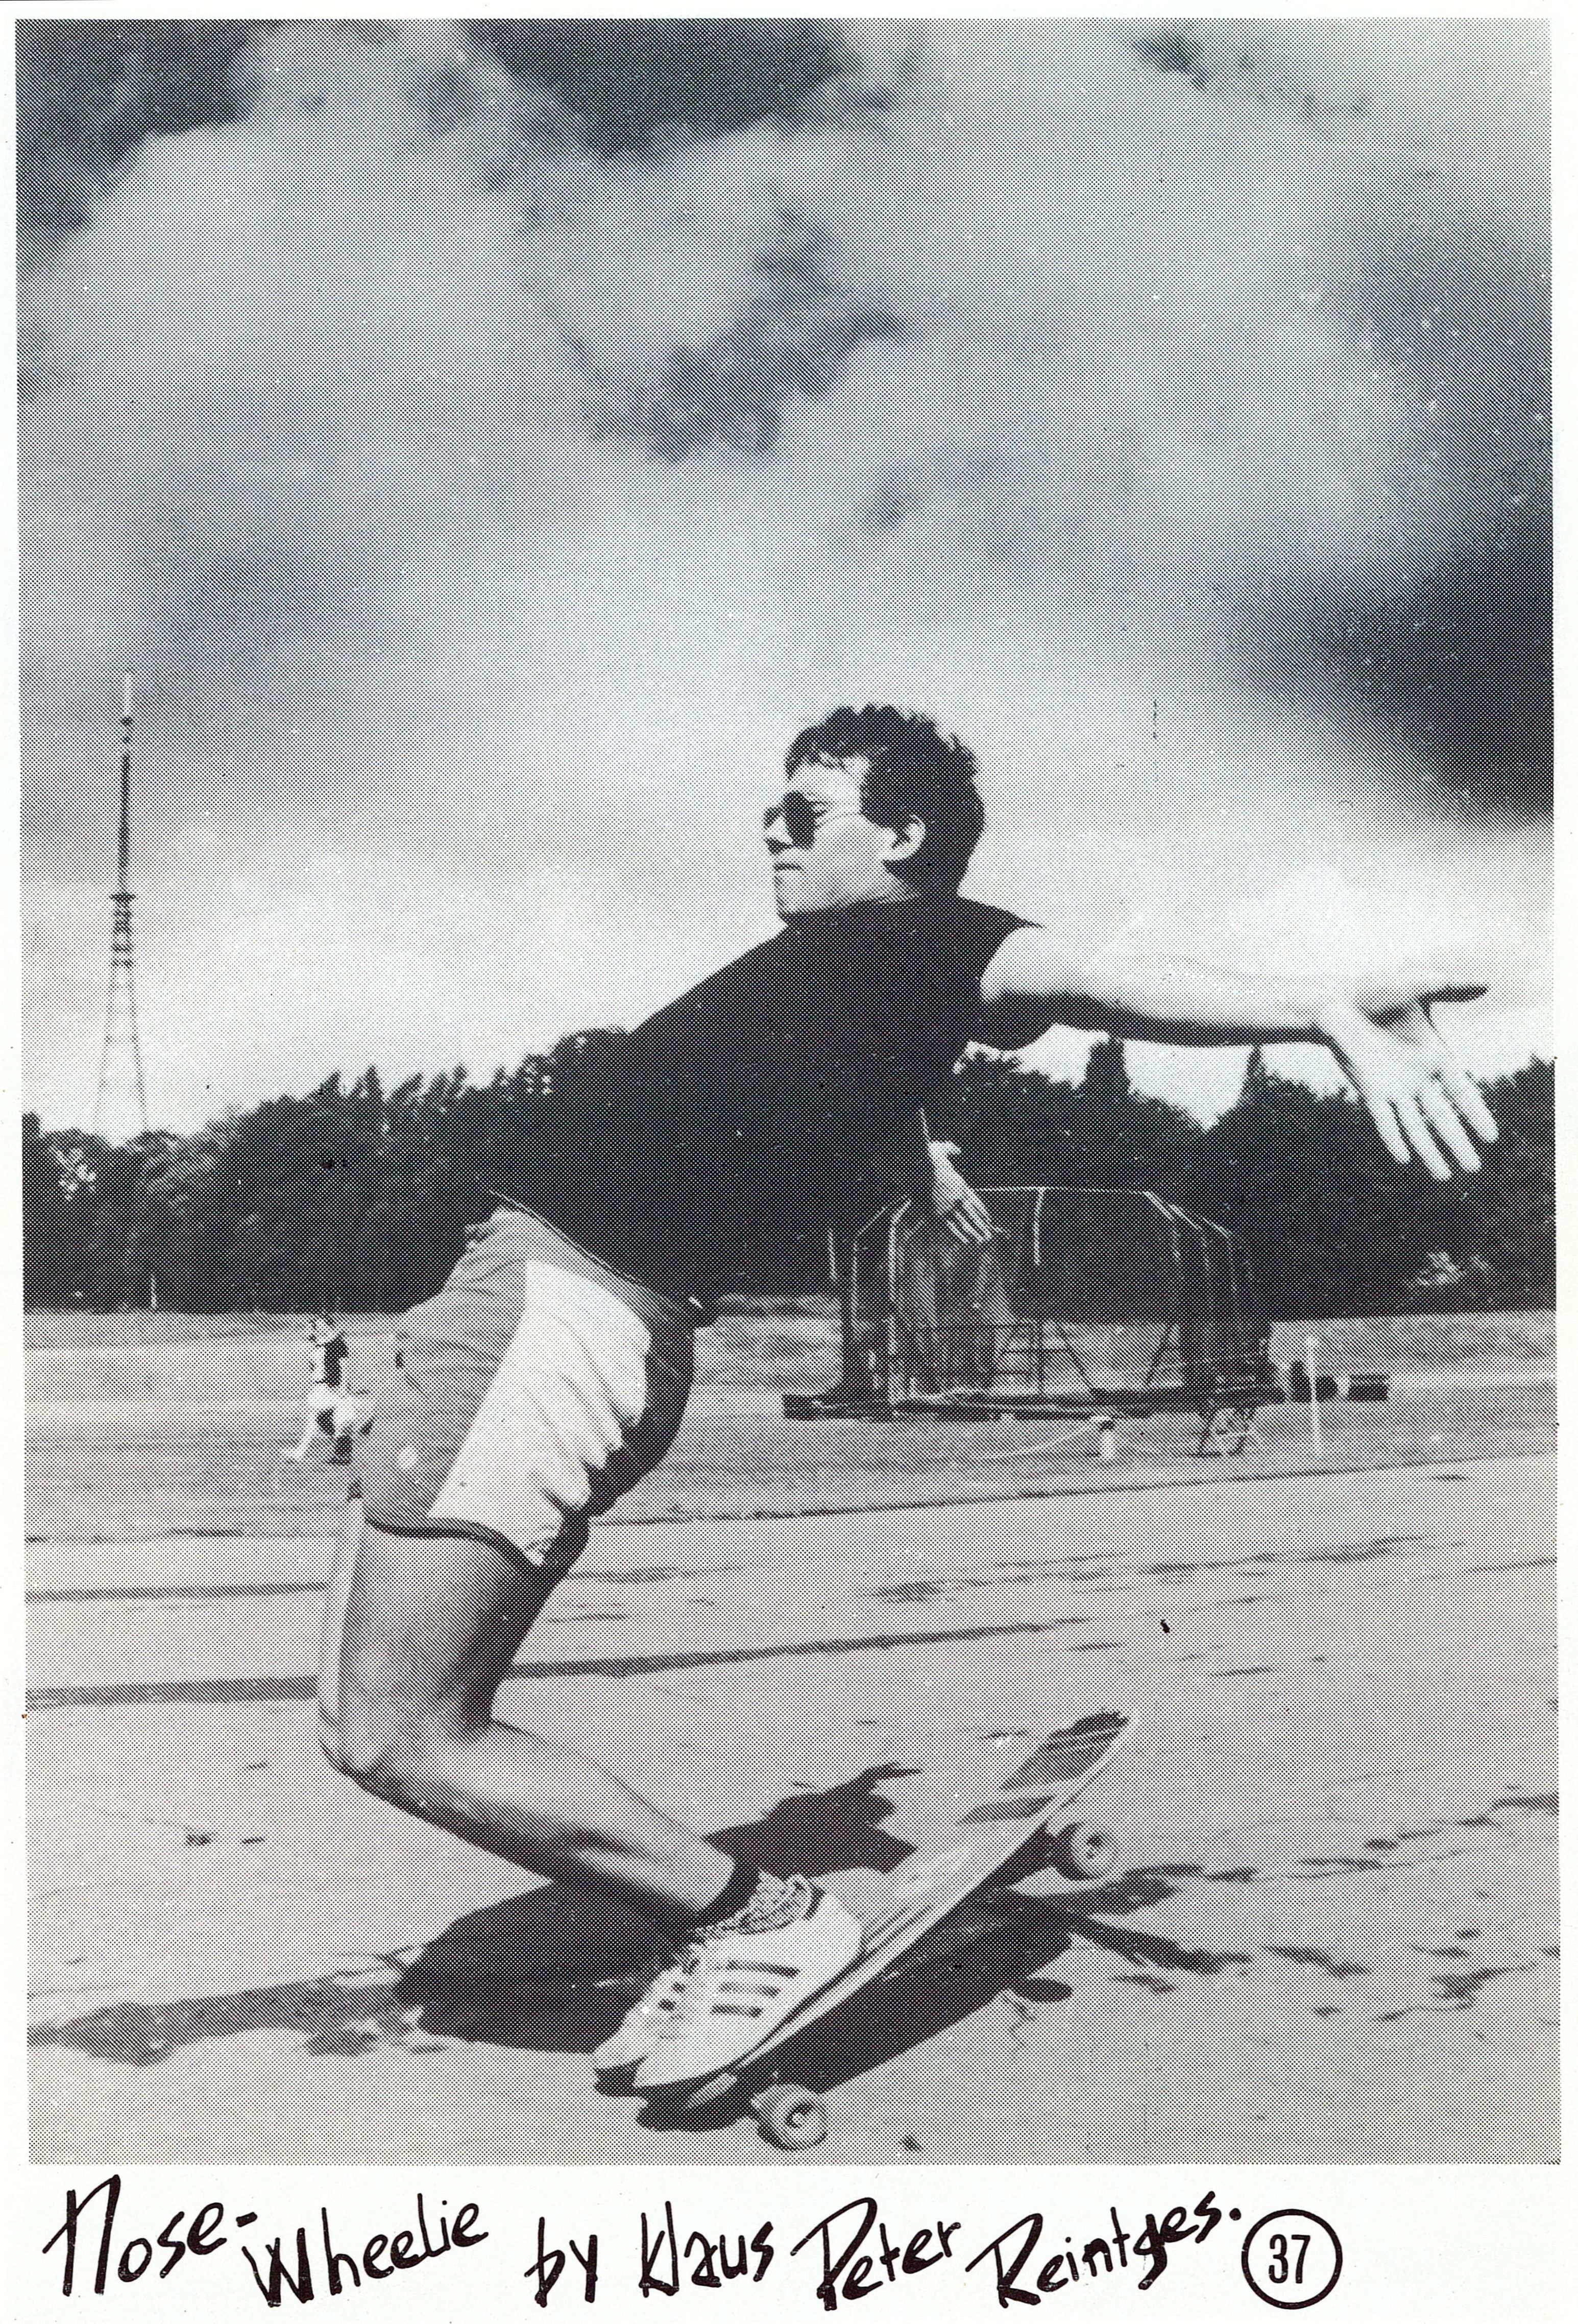 Extrait de Roller Skater magazine, hiver 1982, n°3, Fonds José de Matos (409W), Mucem